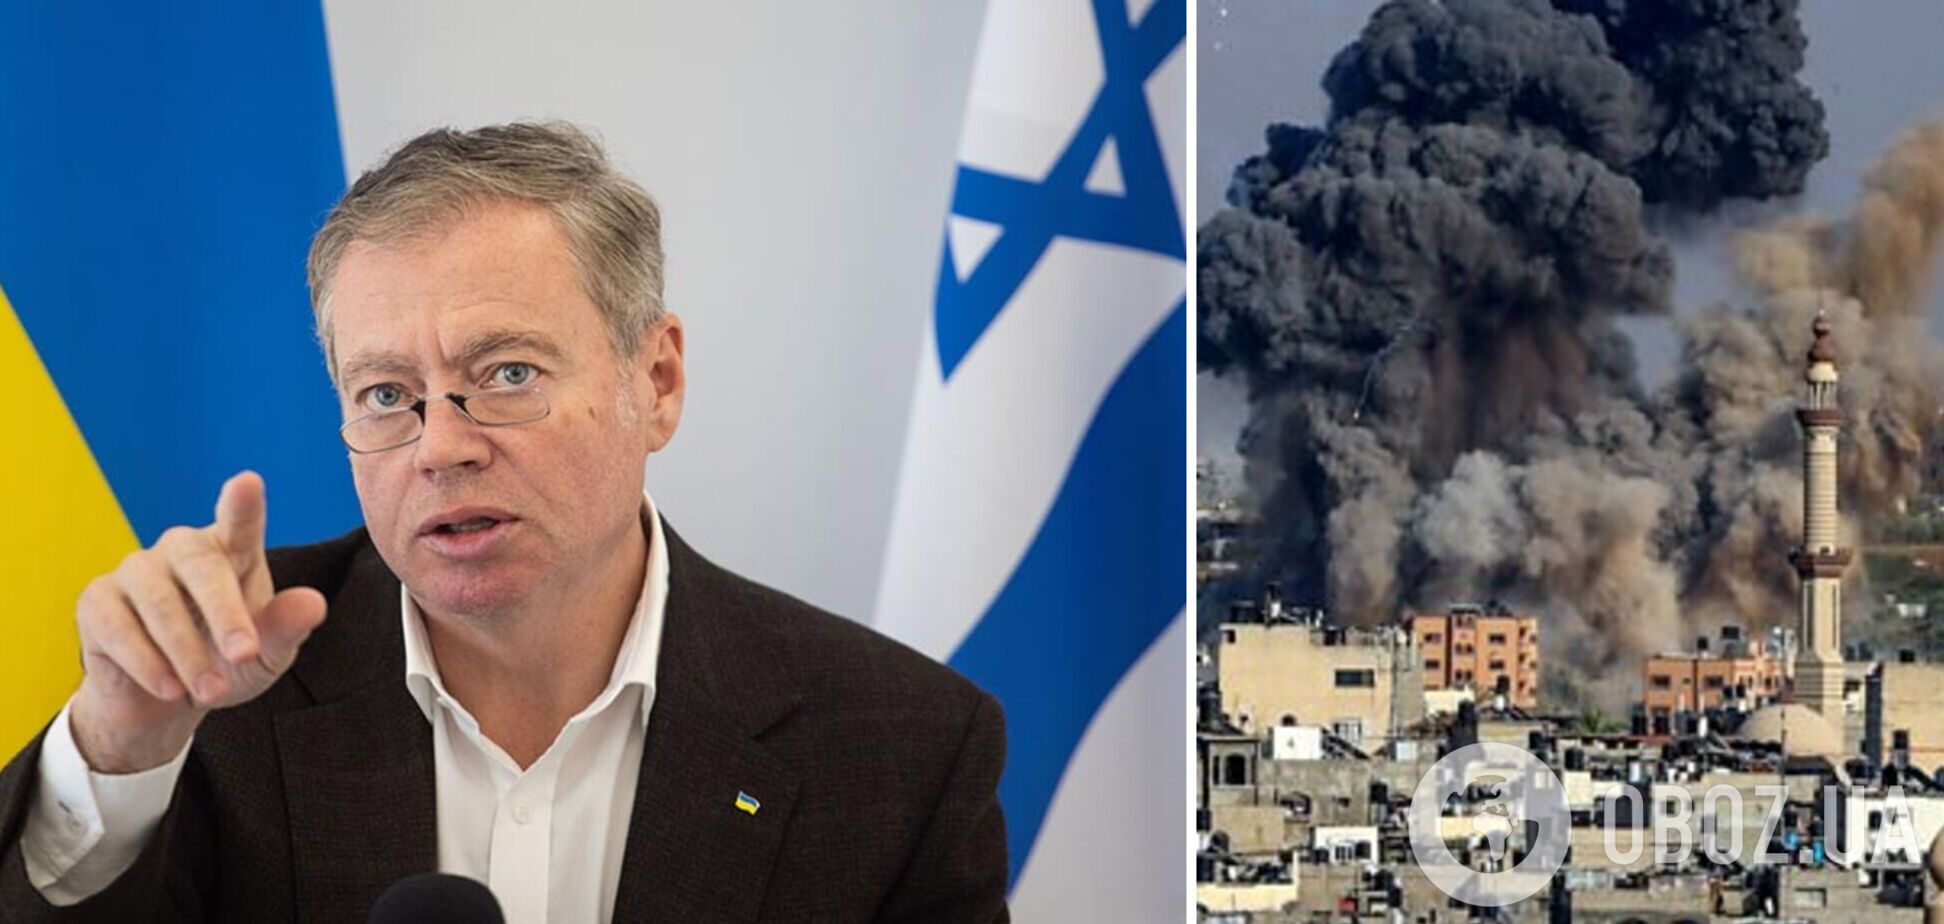 Посол Украины поддержал израильский народ и осудил терроризм